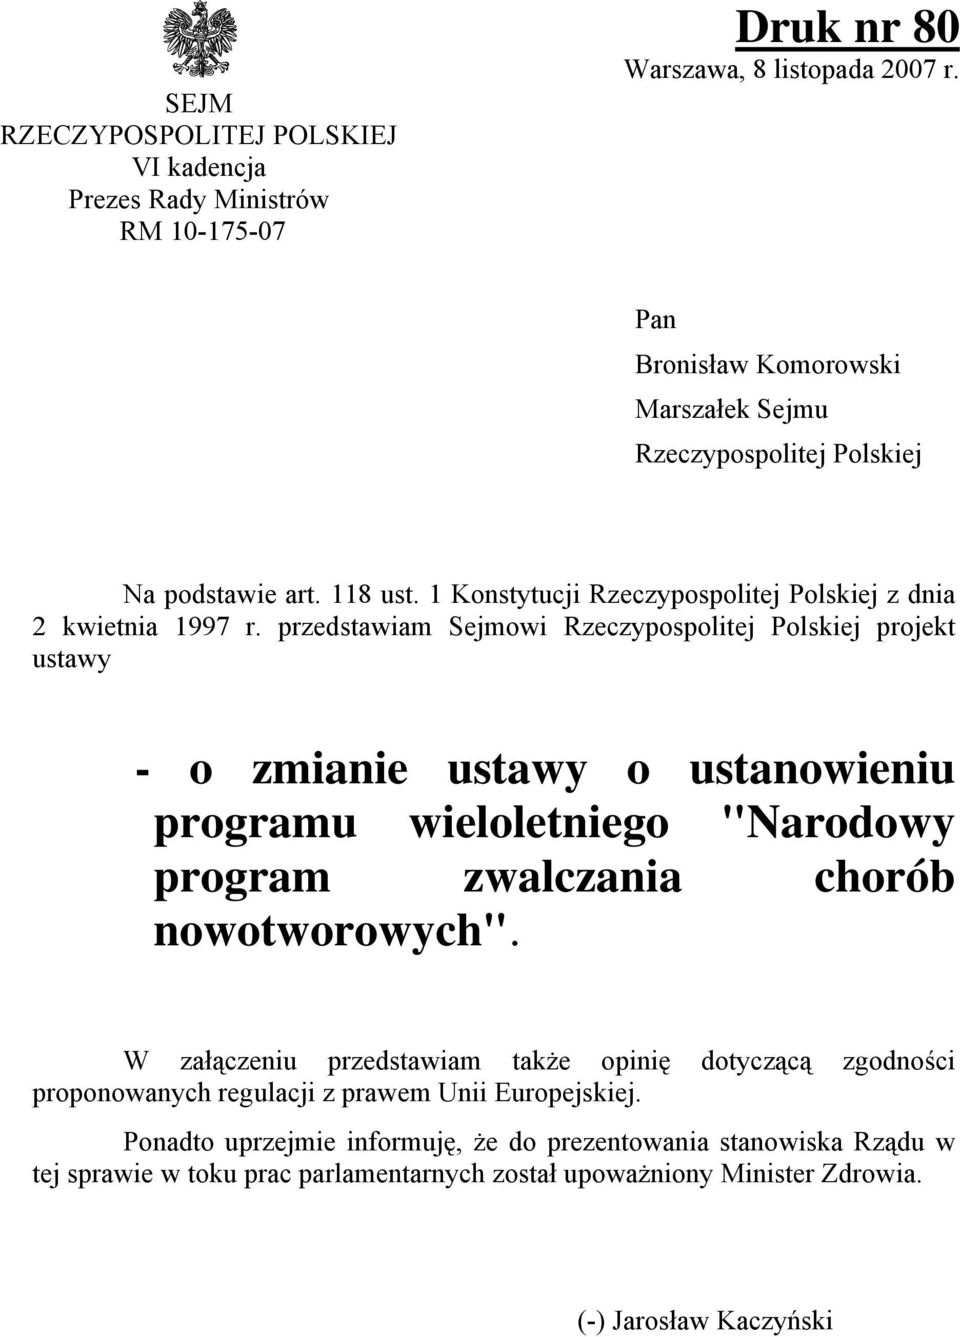 przedstawiam Sejmowi Rzeczypospolitej Polskiej projekt ustawy - o zmianie ustawy o ustanowieniu programu wieloletniego "Narodowy program zwalczania chorób nowotworowych".